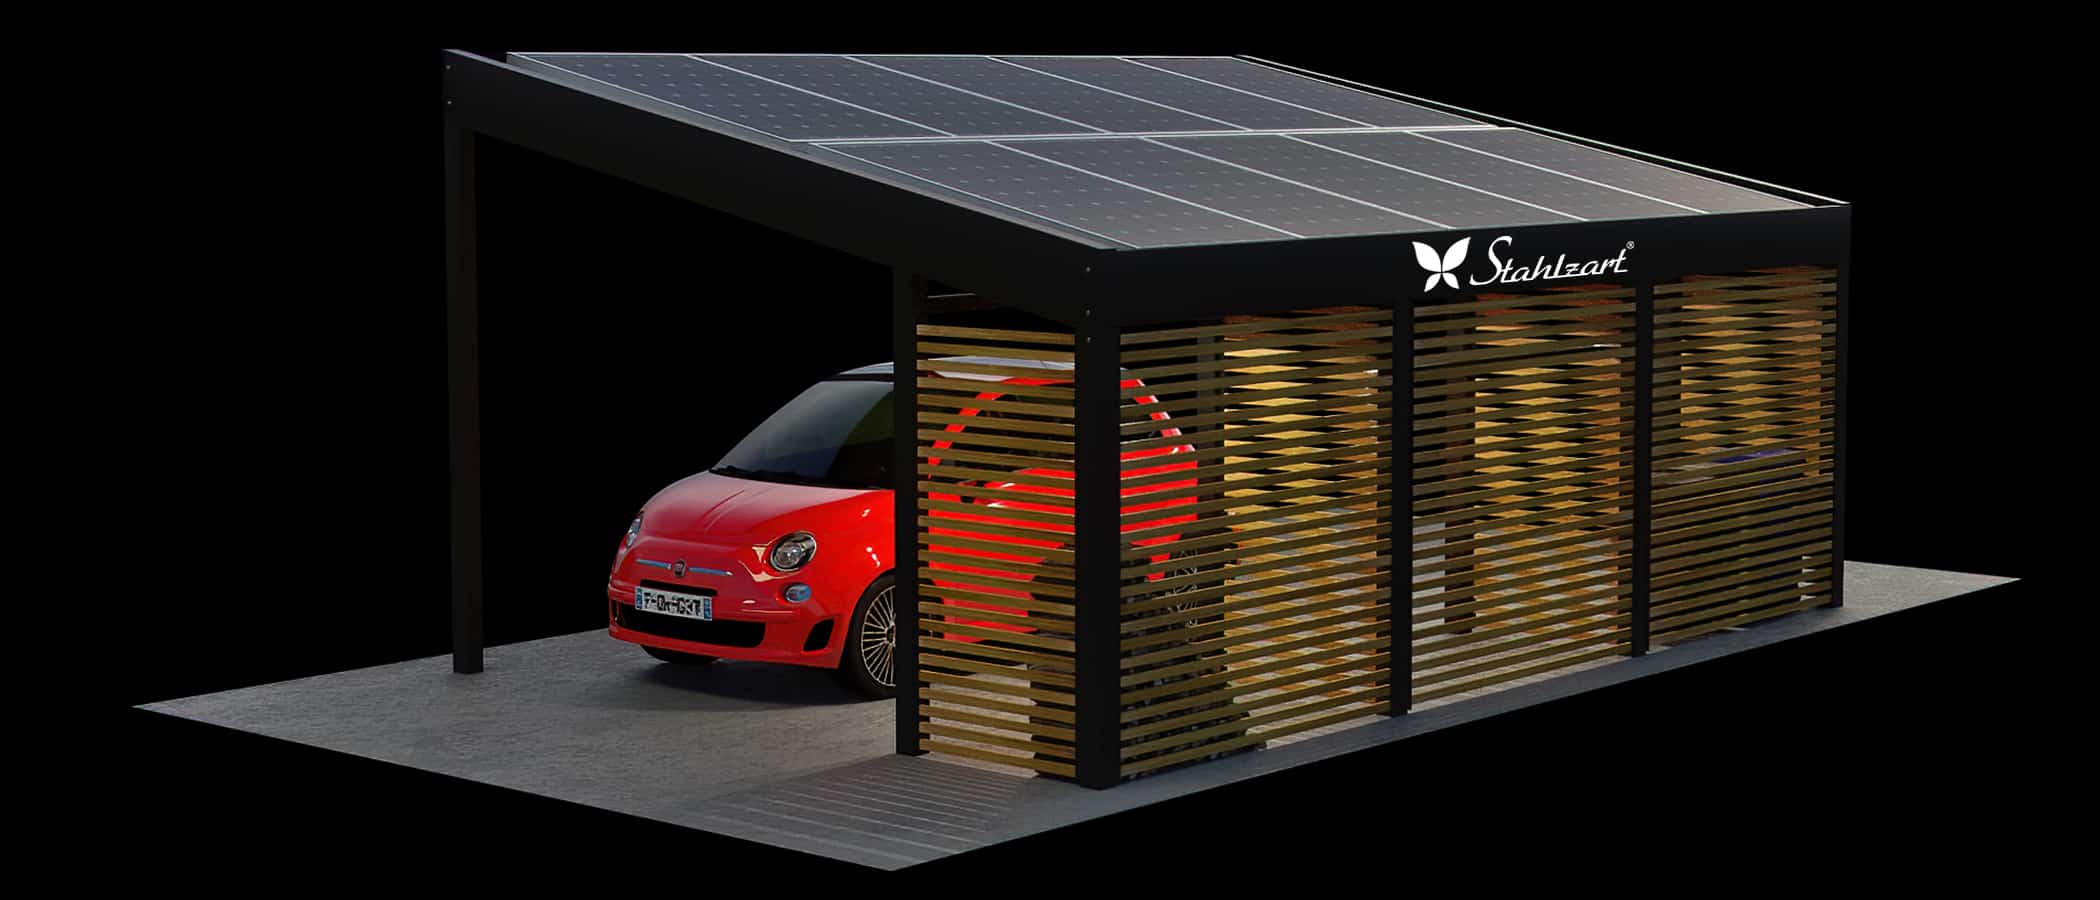 stahlzart-solar-carport-carports-e-fahrzeuge-solaranlage-strom-solarcarport-e-auto-kosten-30-jahre-carportdach-photovoltaik-ueberdachung-mueltonnen-brennholzlager-vorteile-fragen-holz-metall-stahl-